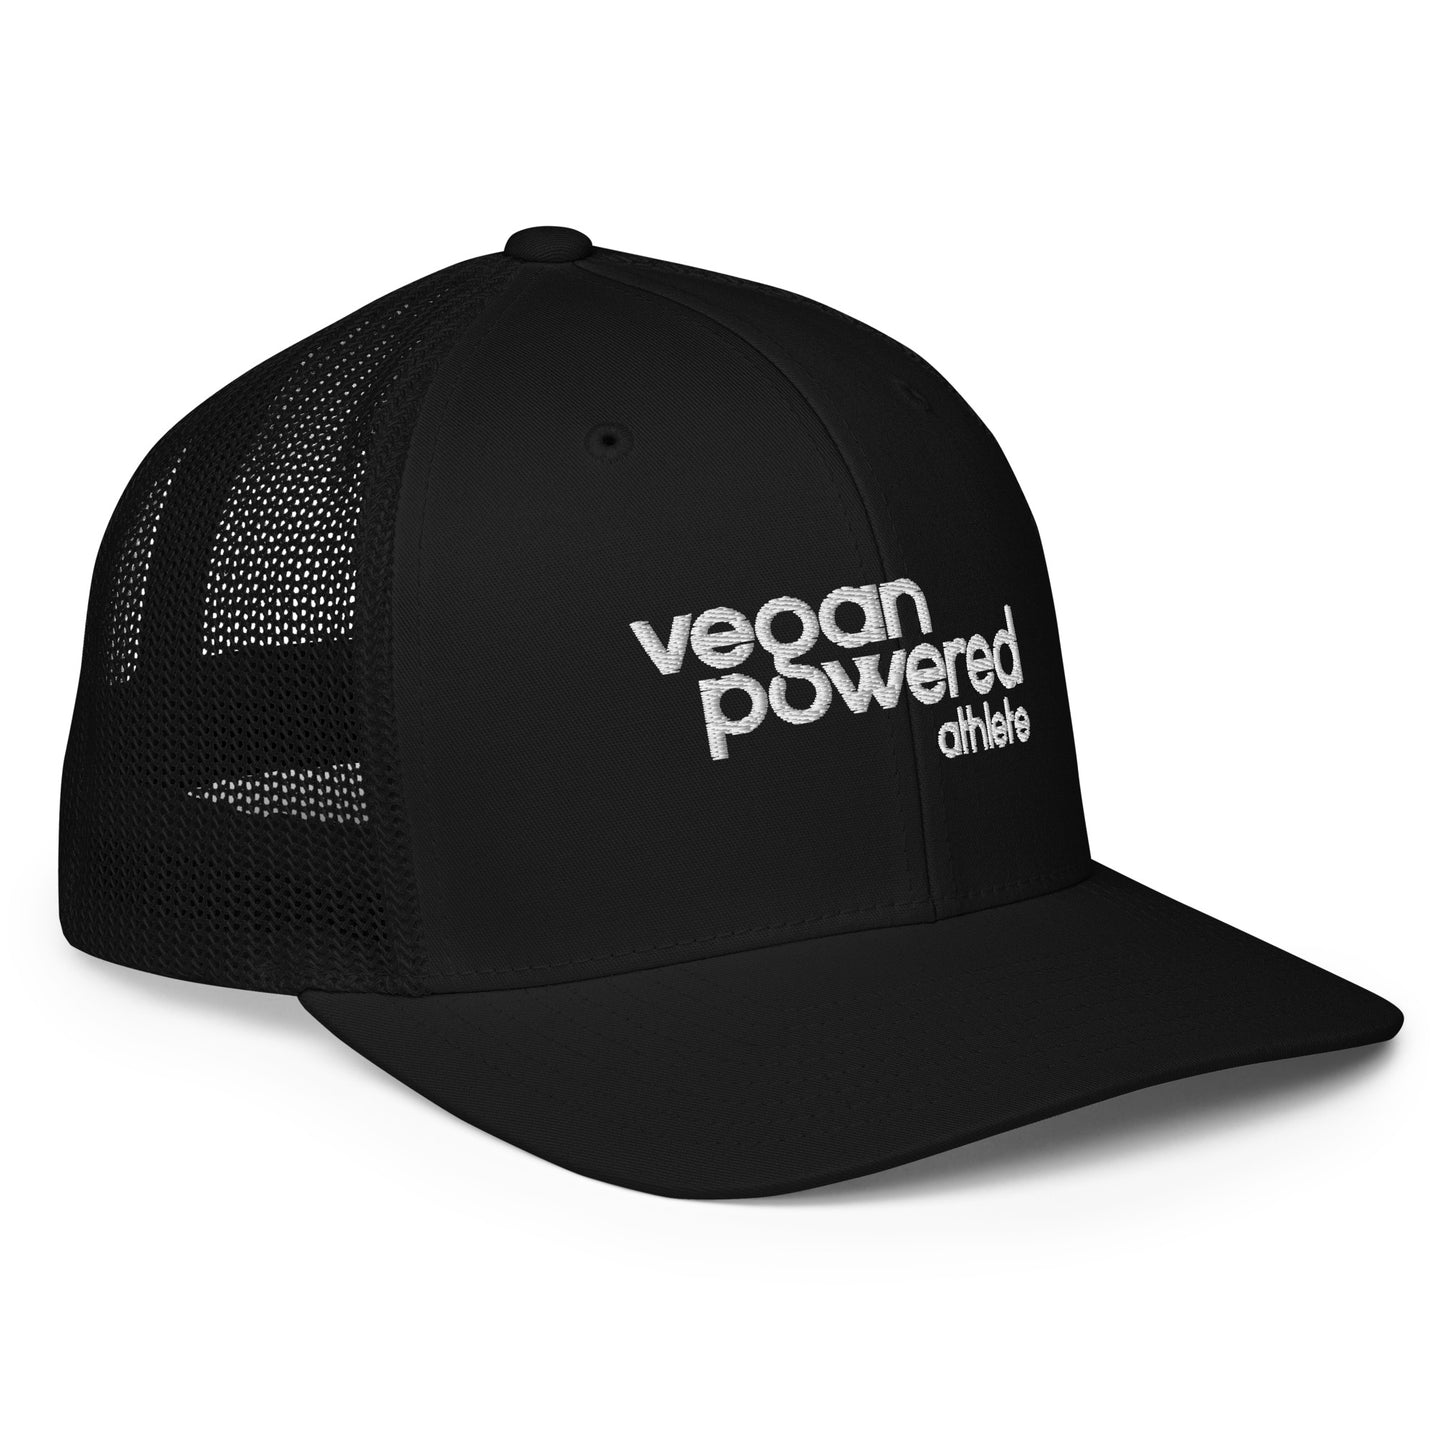 vegan powered athlete Mesh back trucker cap